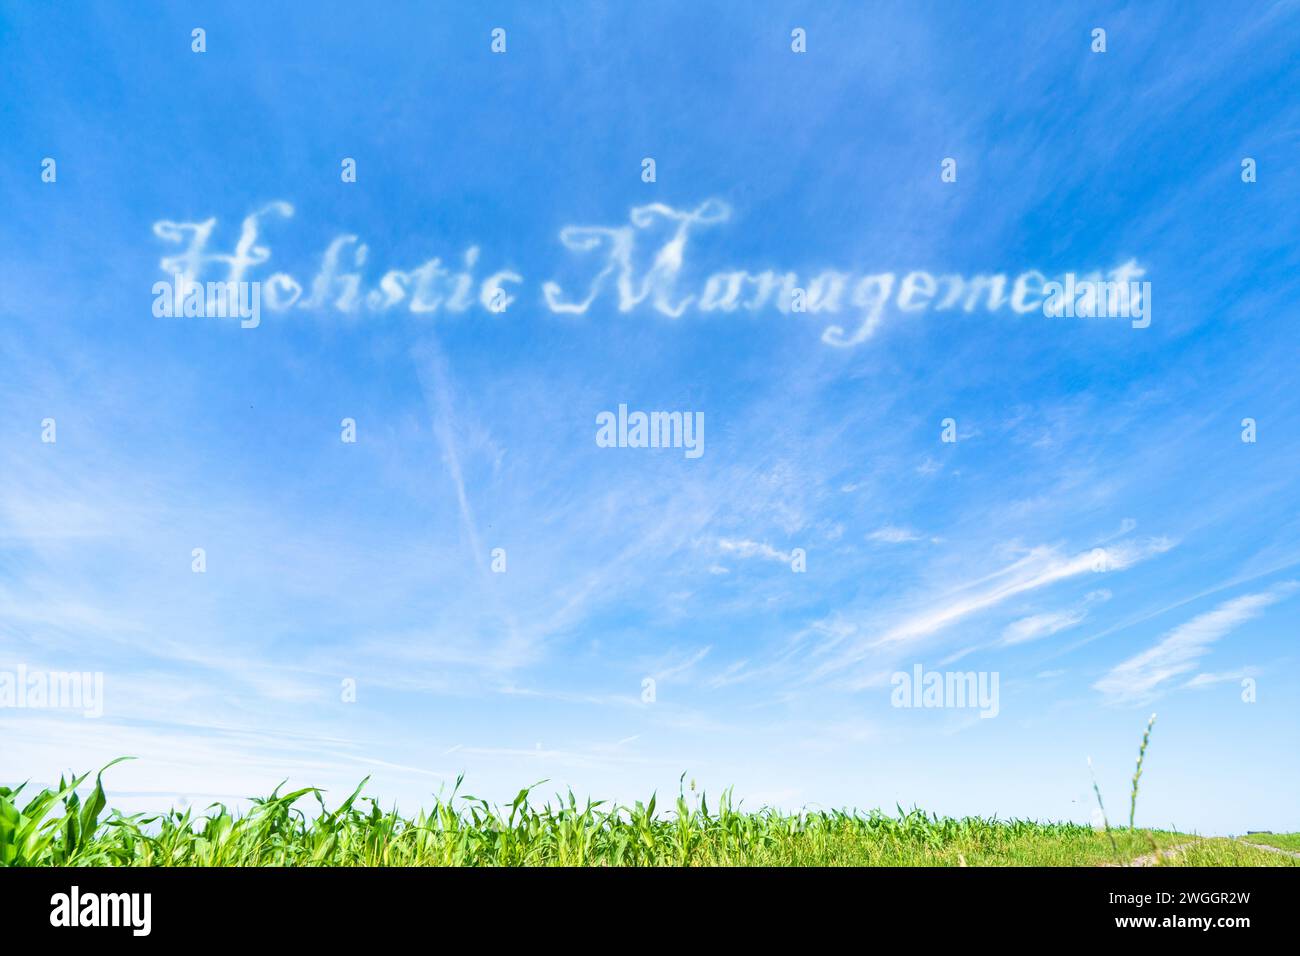 Ganzheitliches Management: Integrierter Ansatz für die Landbewirtschaftung unter Berücksichtigung ökologischer, ökonomischer und sozialer Faktoren. Stockfoto